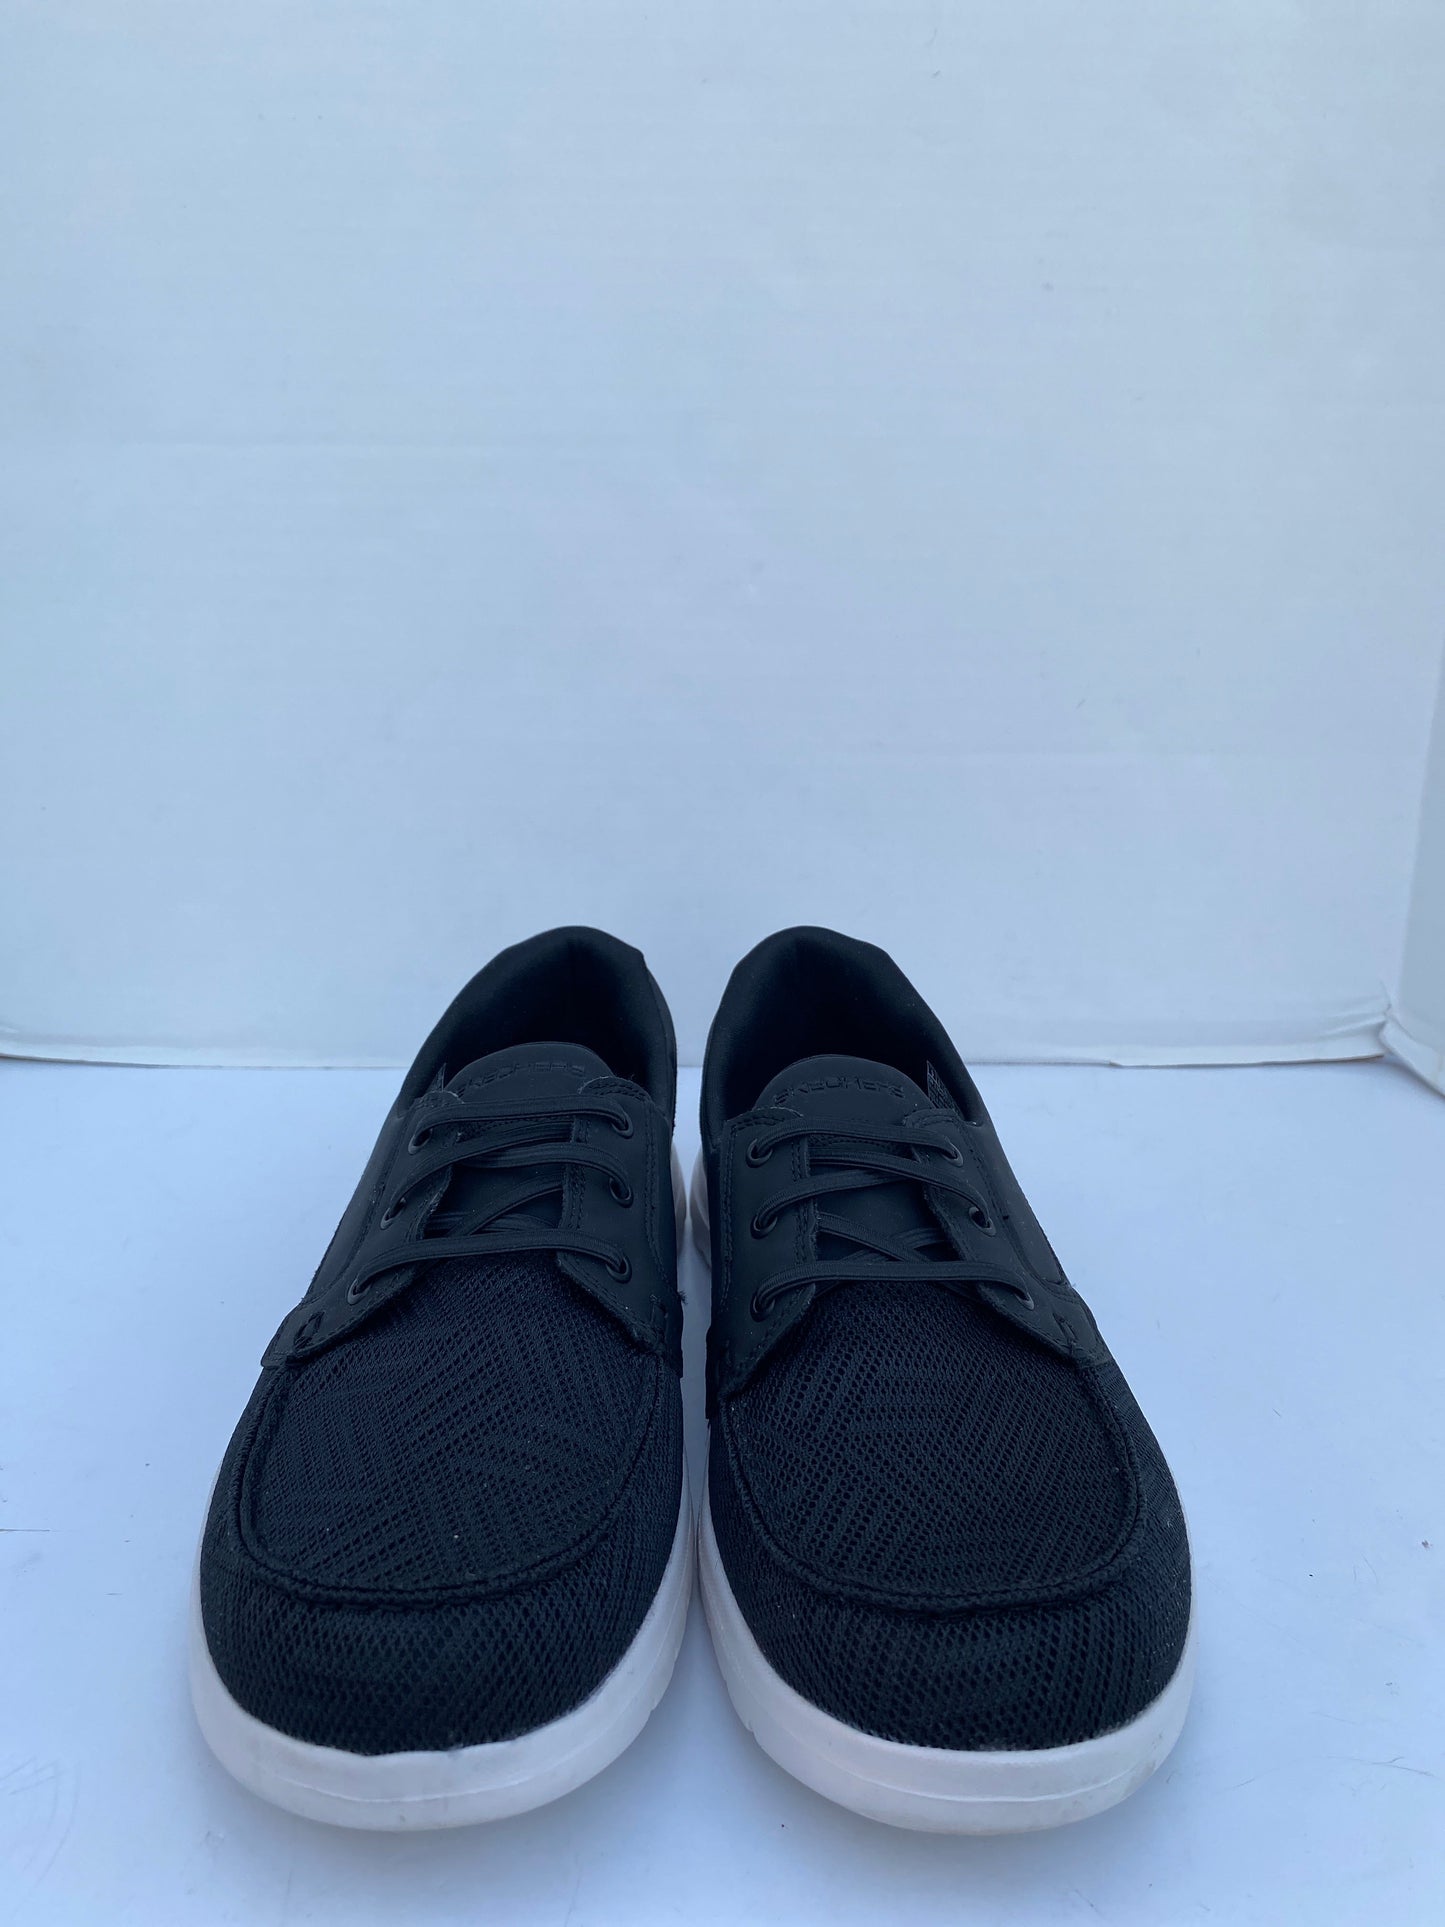 Black Shoes Flats Skechers, Size 9